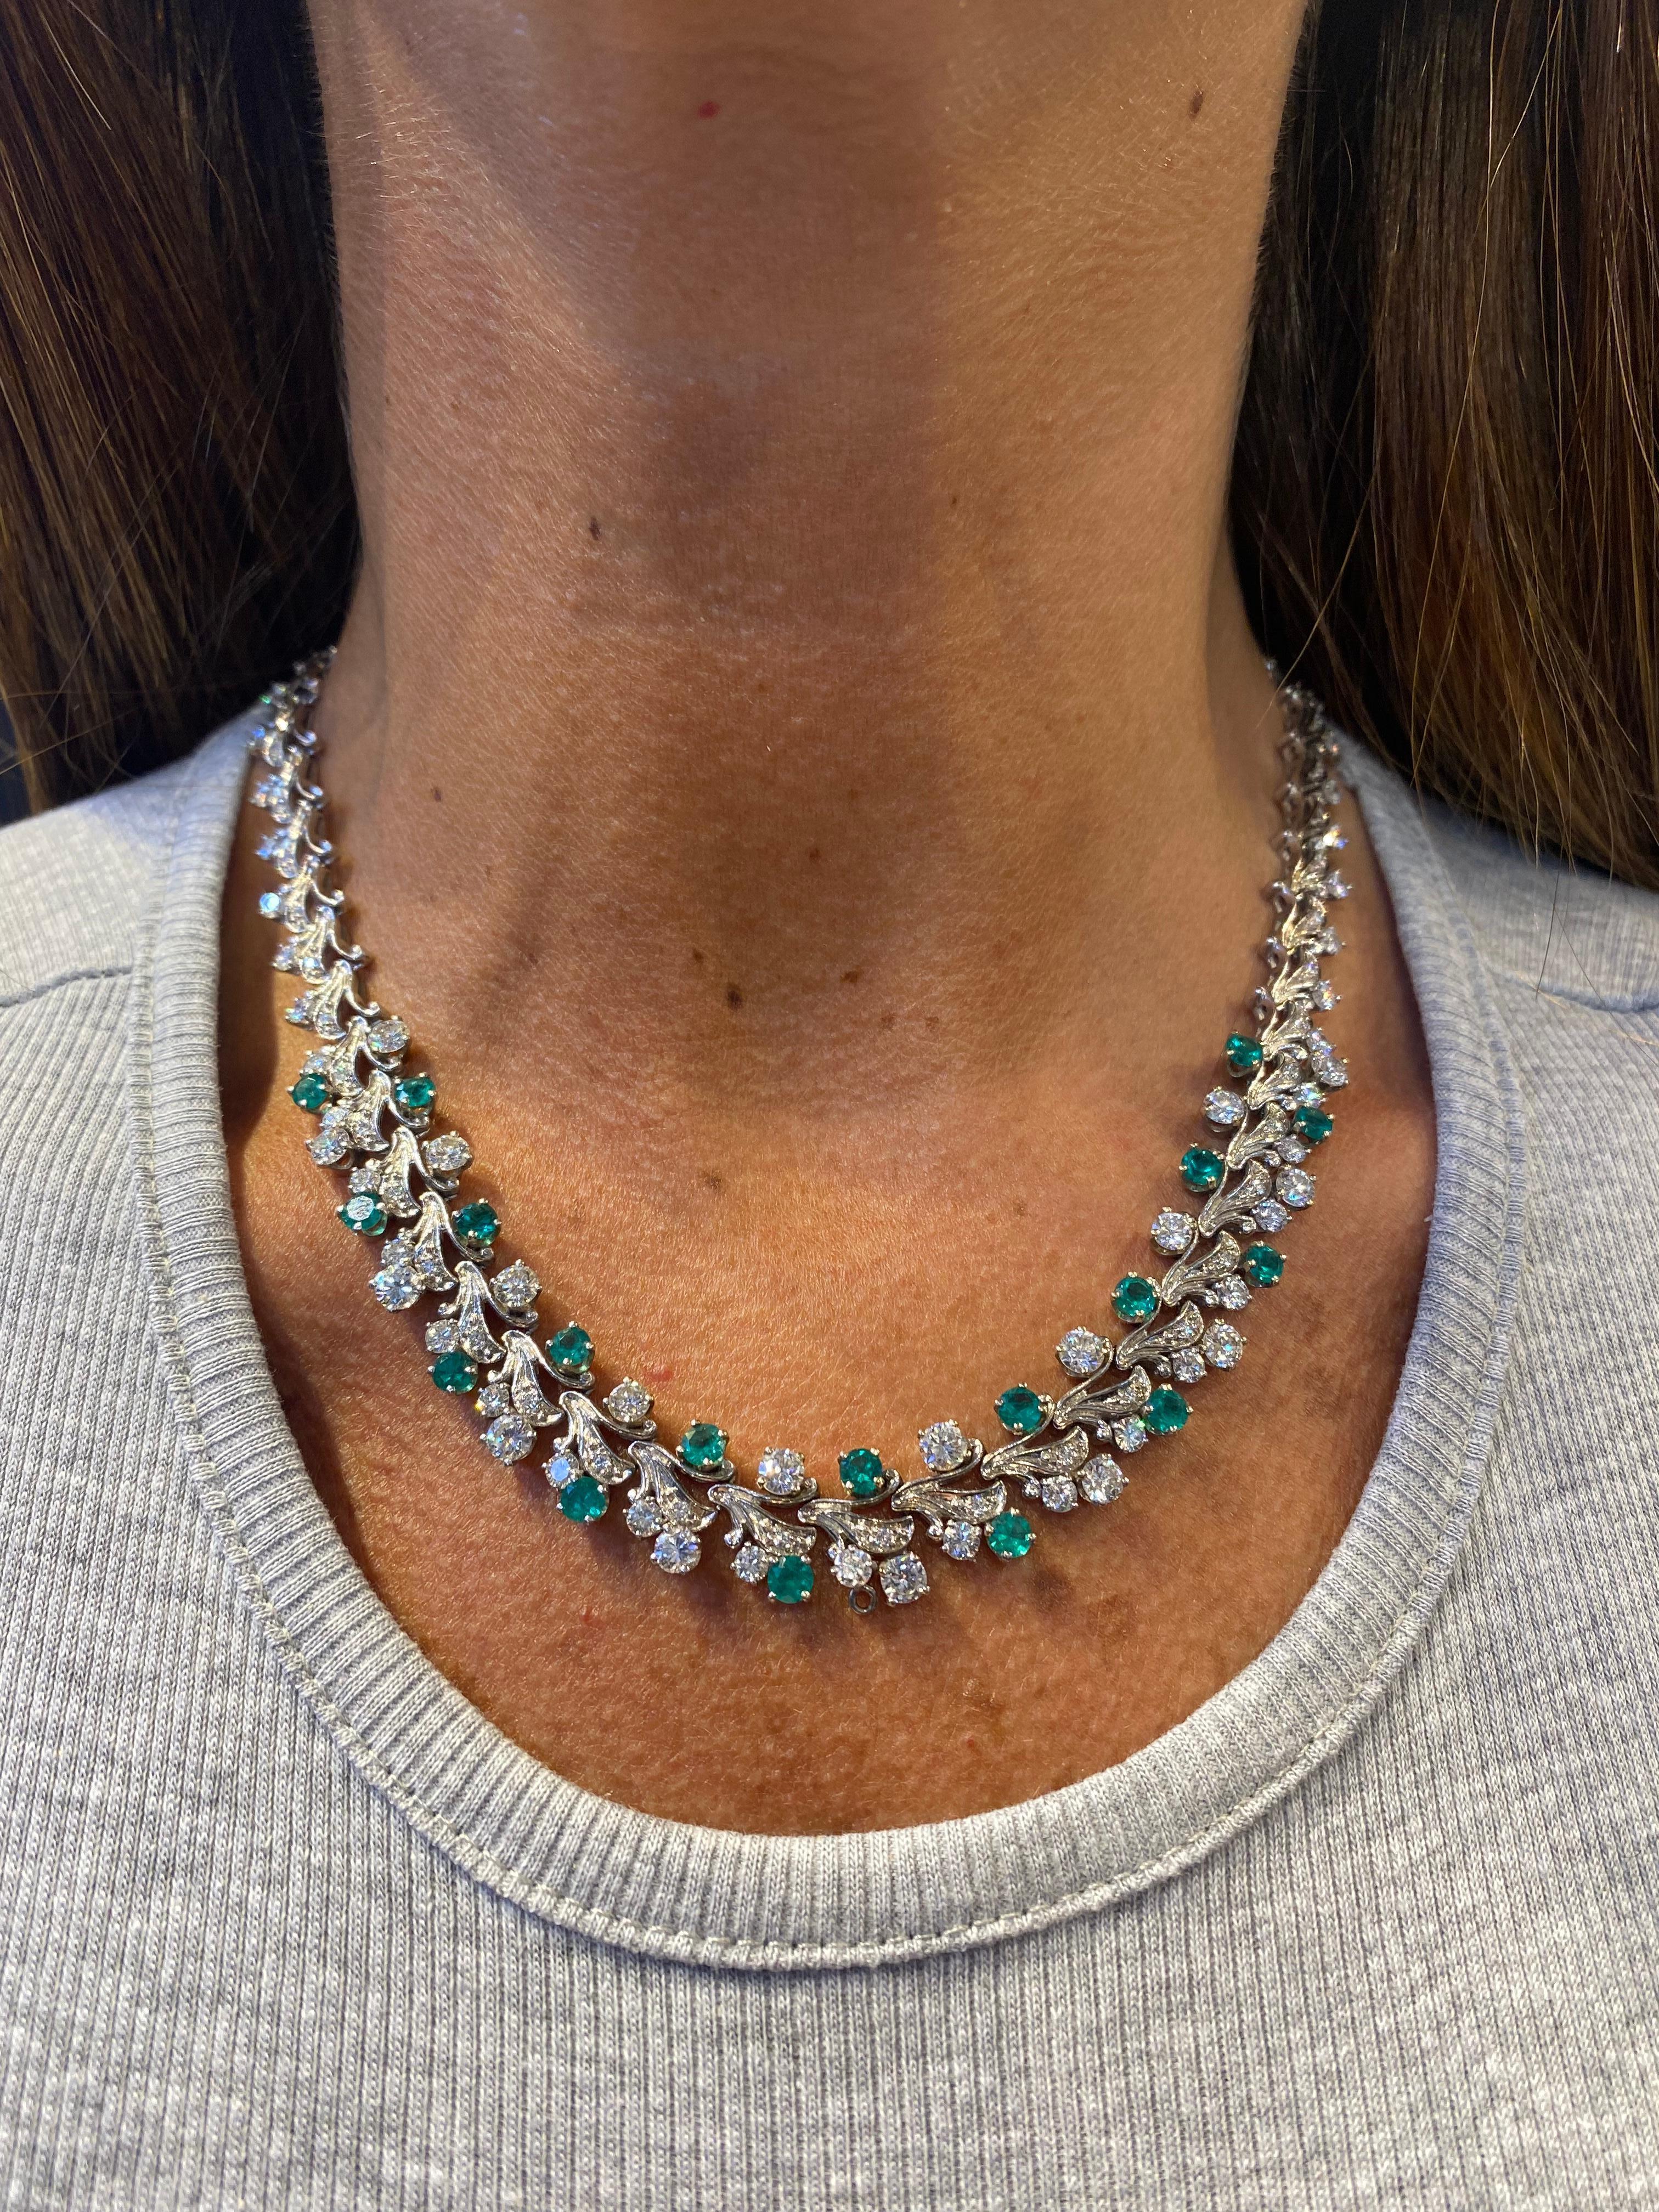 emerald diamond necklace